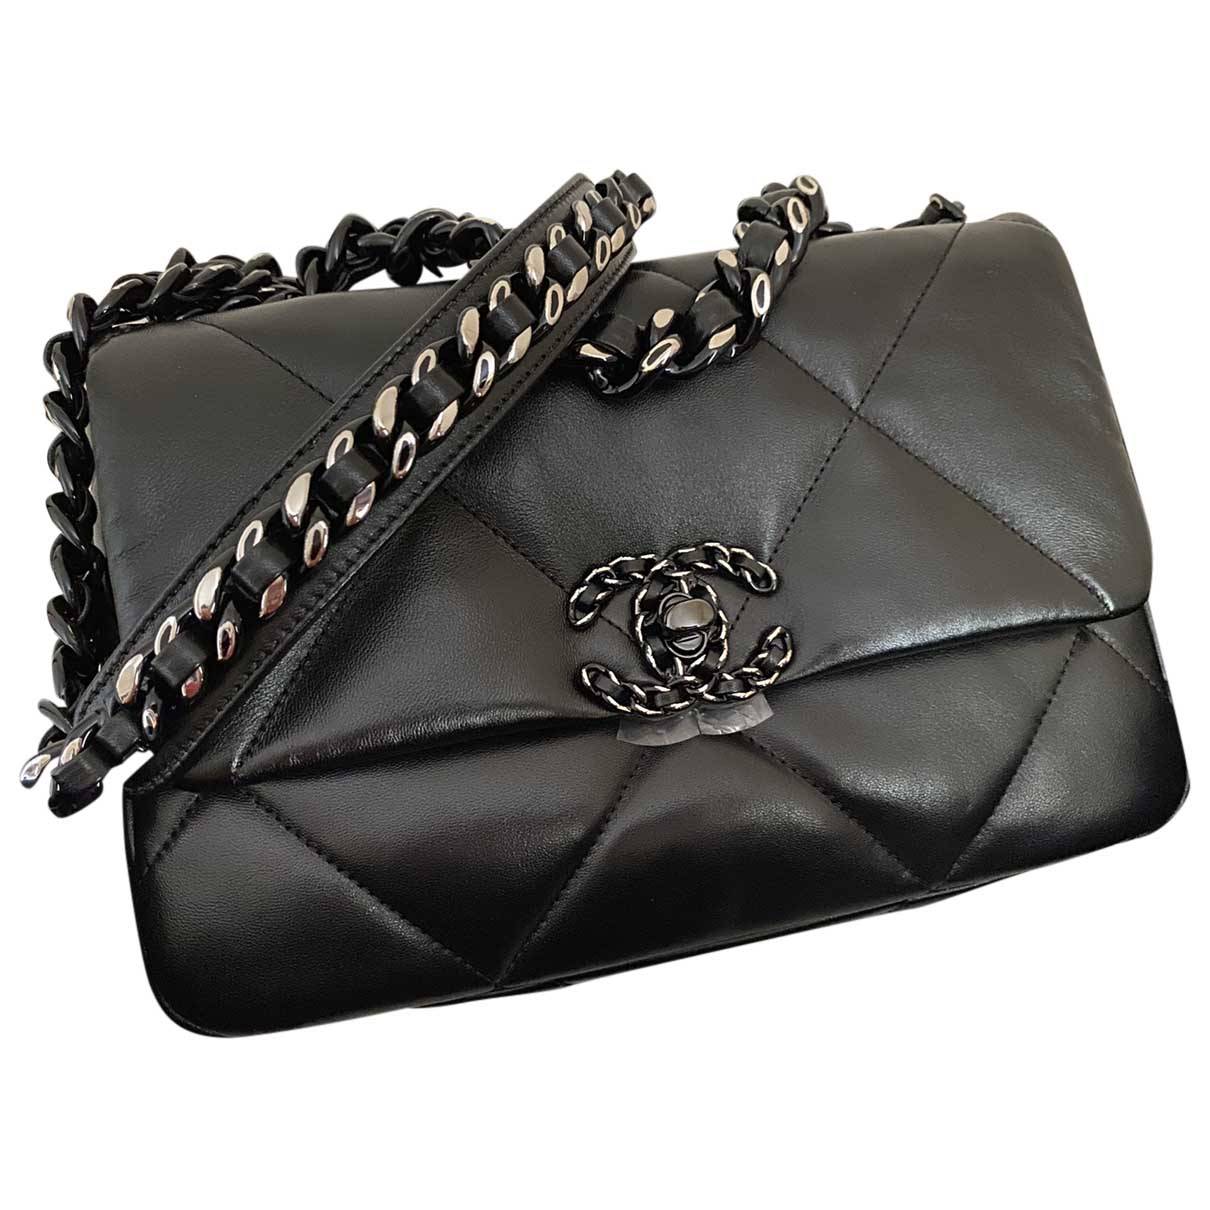 Vent et øjeblik ødemark Summen Chanel 19 leather handbag Chanel Black in Leather - 25163245